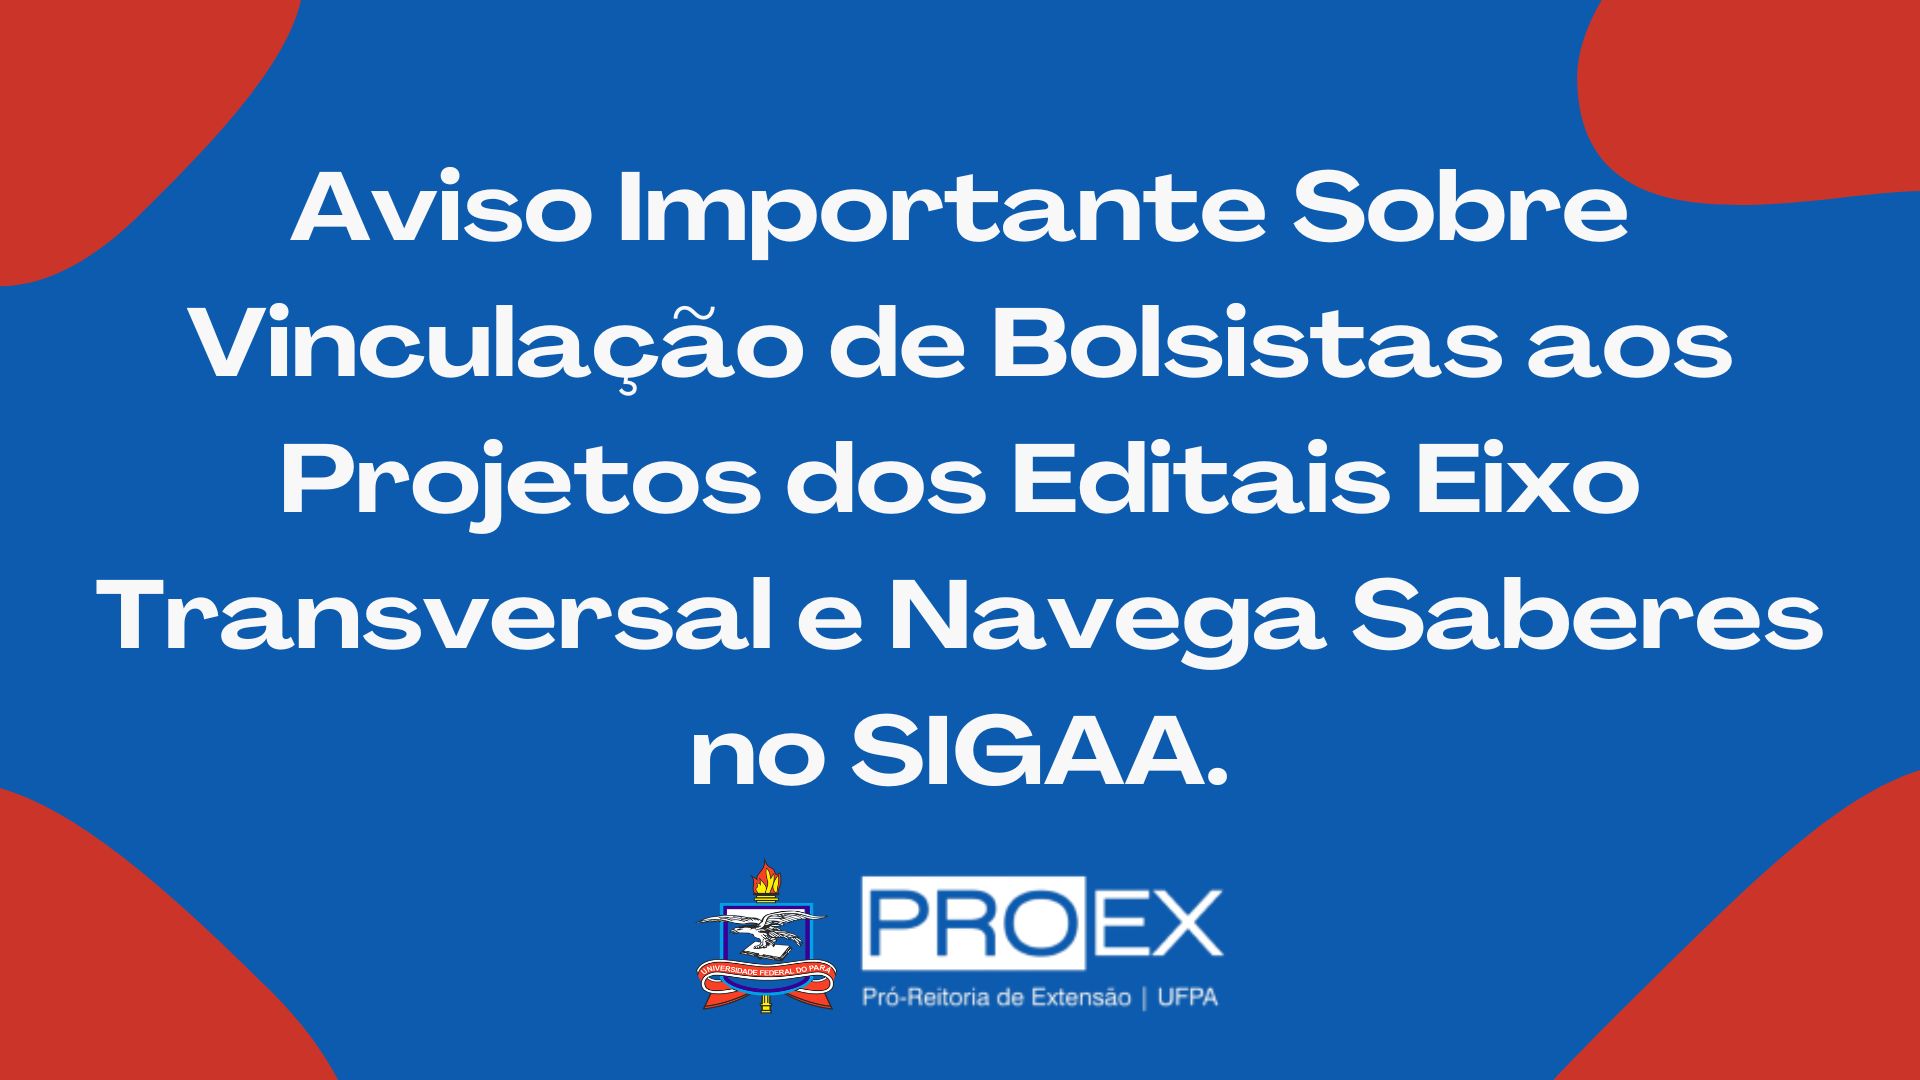 Aviso Importante sobre Vinculção de Bolsistas aos Projetos dos Editais Eixo Transversal e Navega Saberes no SIGAA.